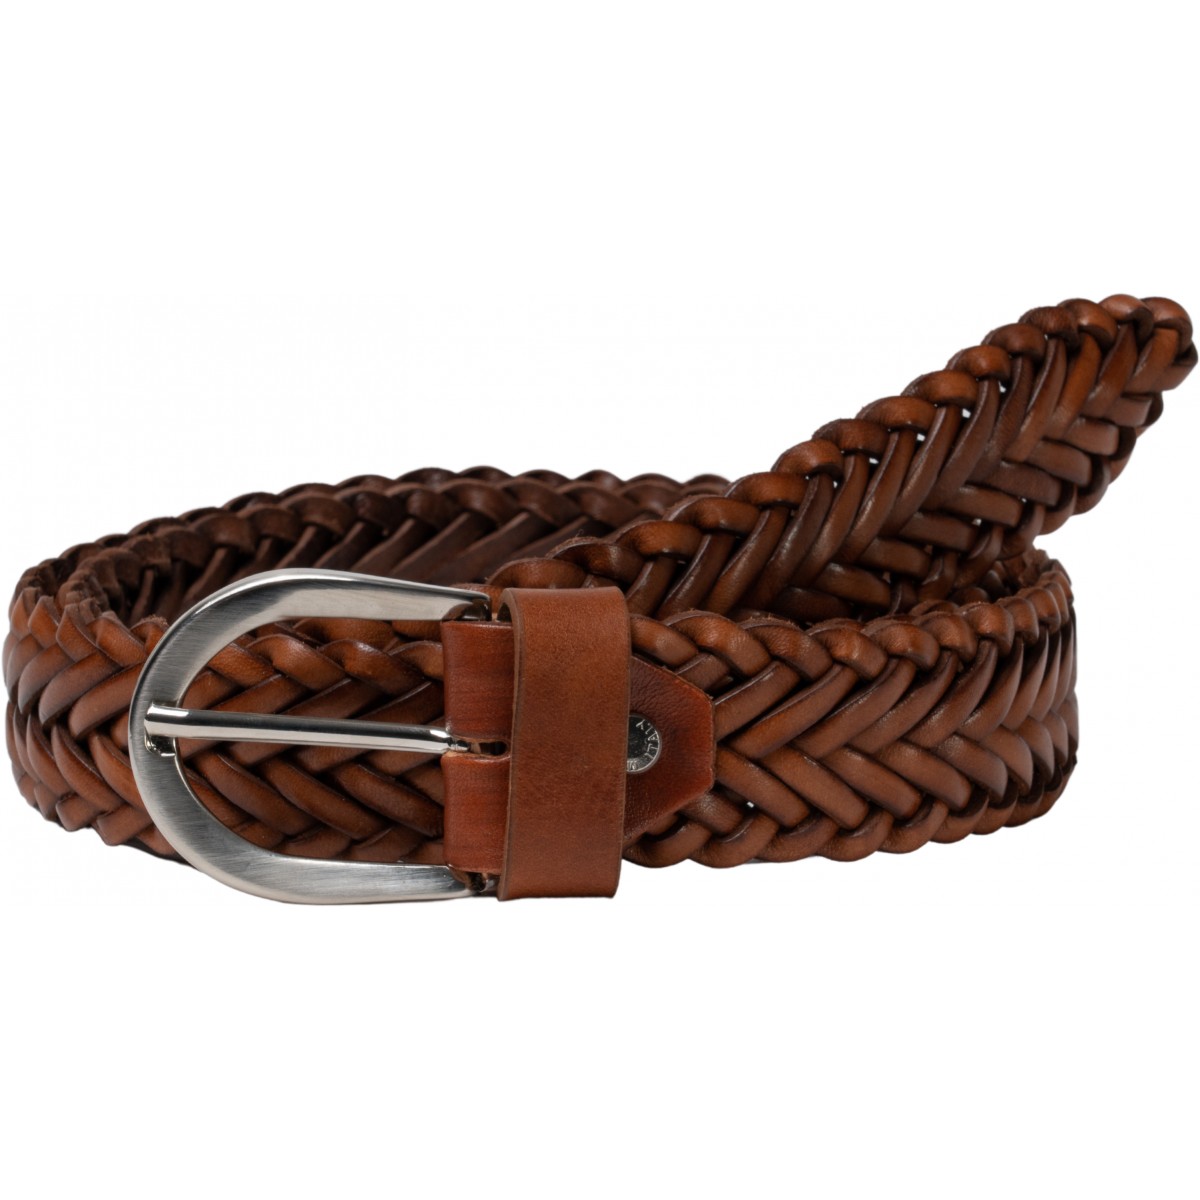 Braided belt made of elegant cowhide - brown, Belts